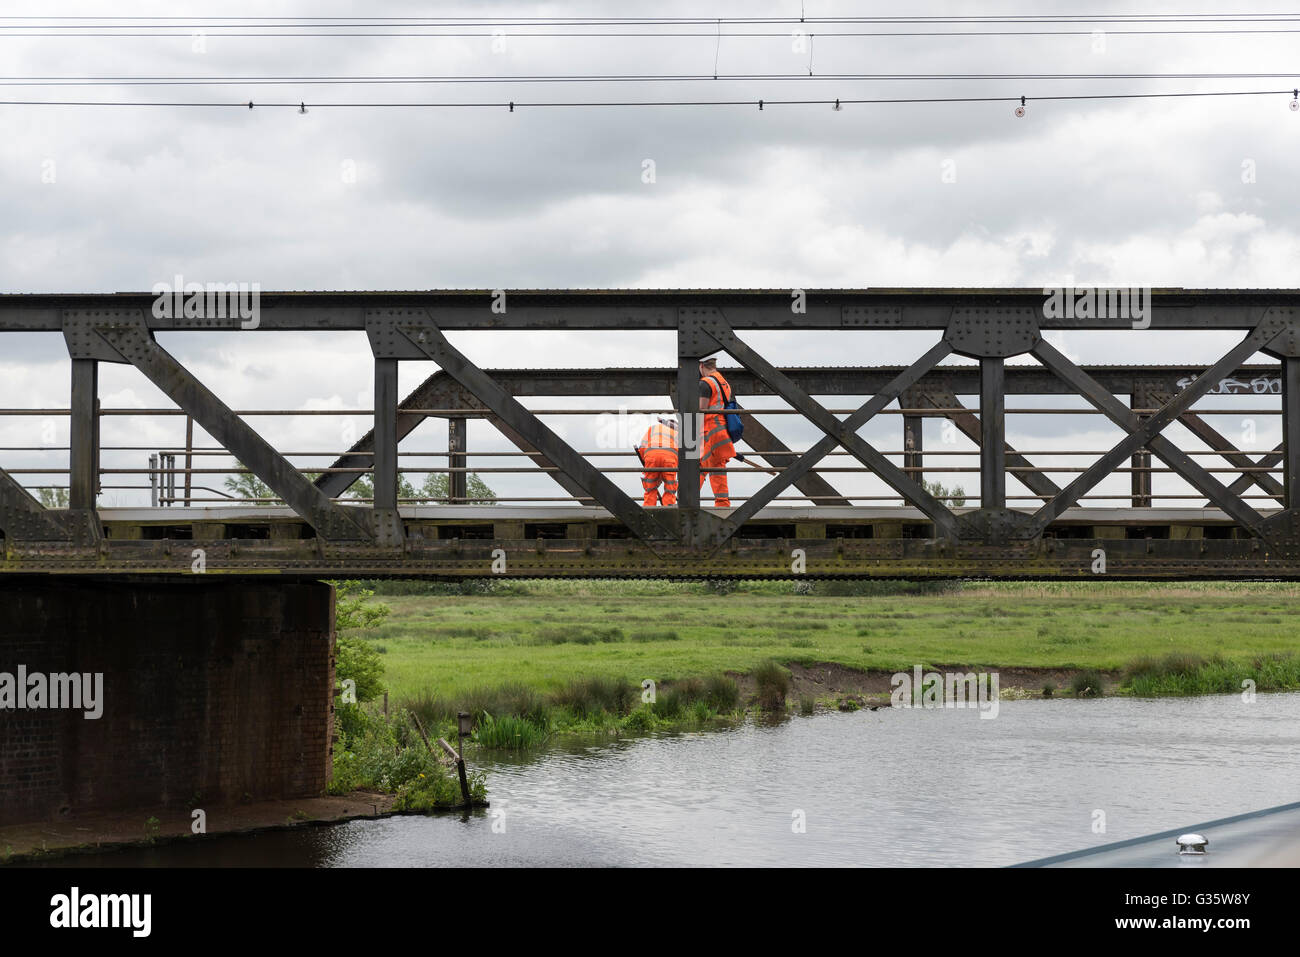 Juges de ligne ferroviaire contrôle permanente sur truss bridge sur la rivière Great Ouse Ely Cambridgeshire England UK Banque D'Images